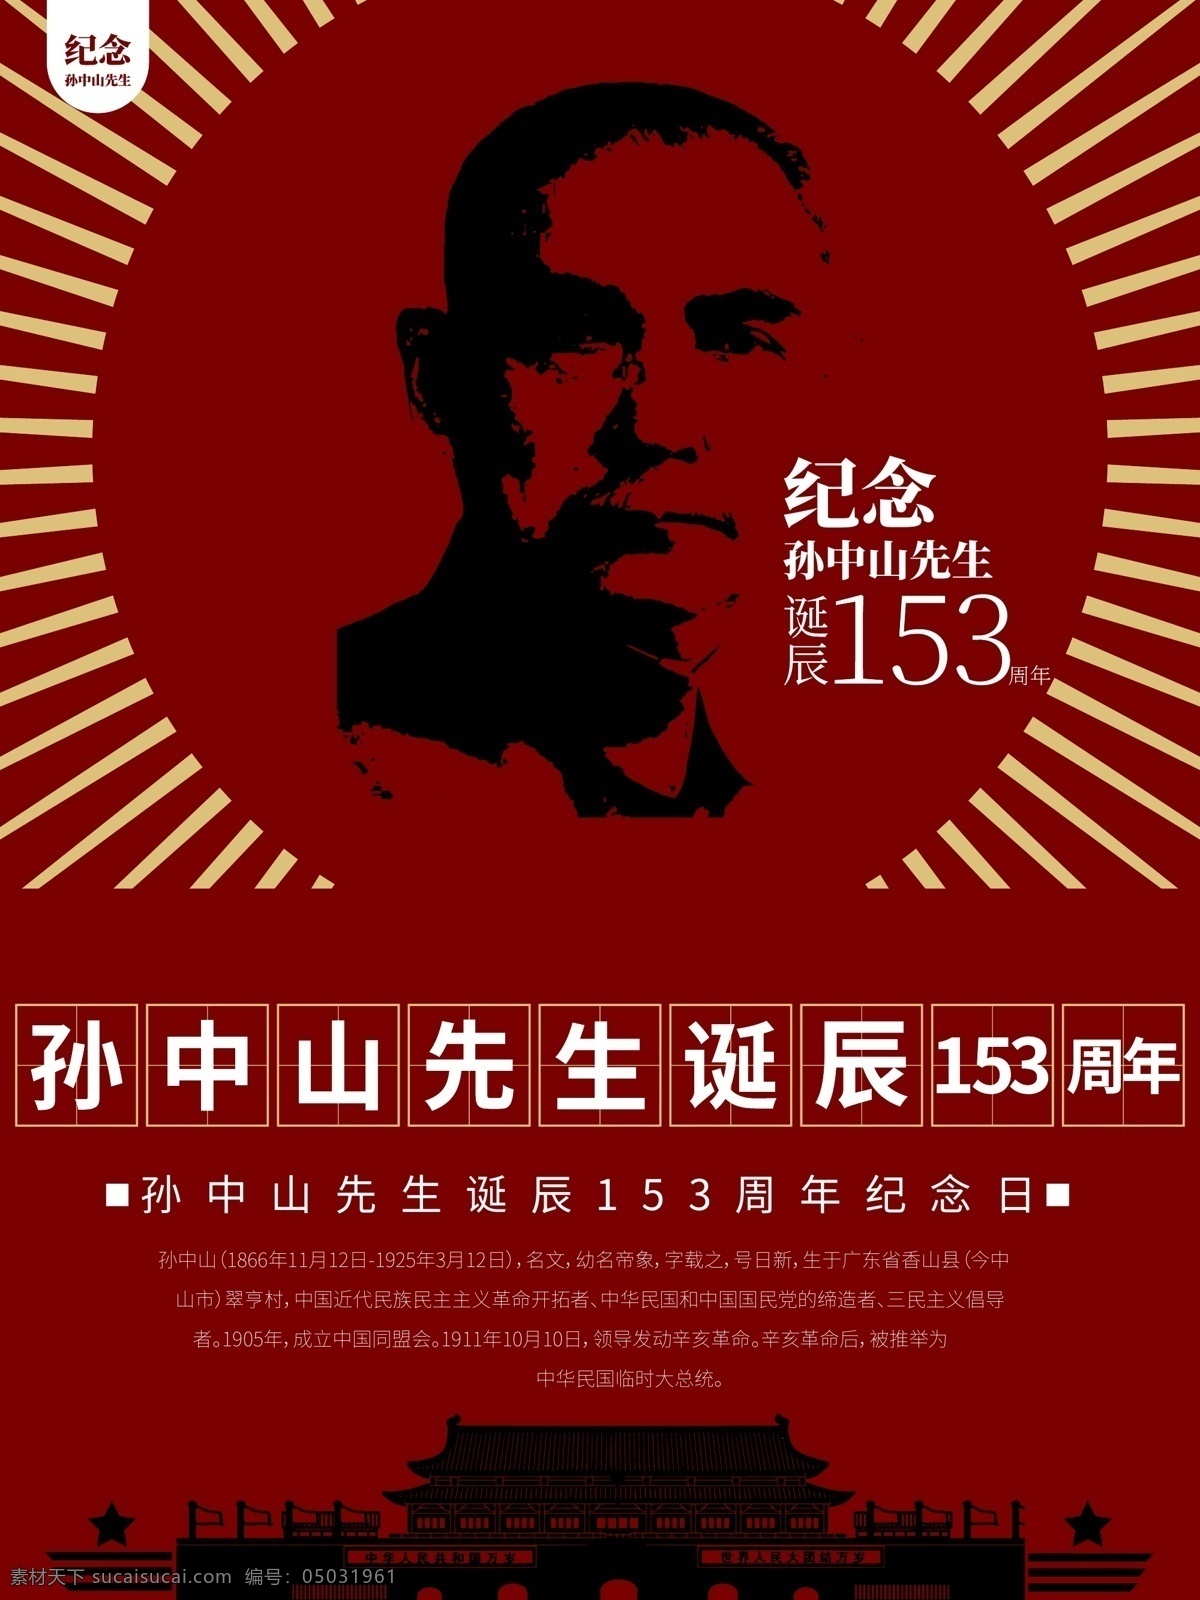 原创 文革 风 纪念 海报 文革风 中国风 红色革命 水墨 表达明确 党建海报